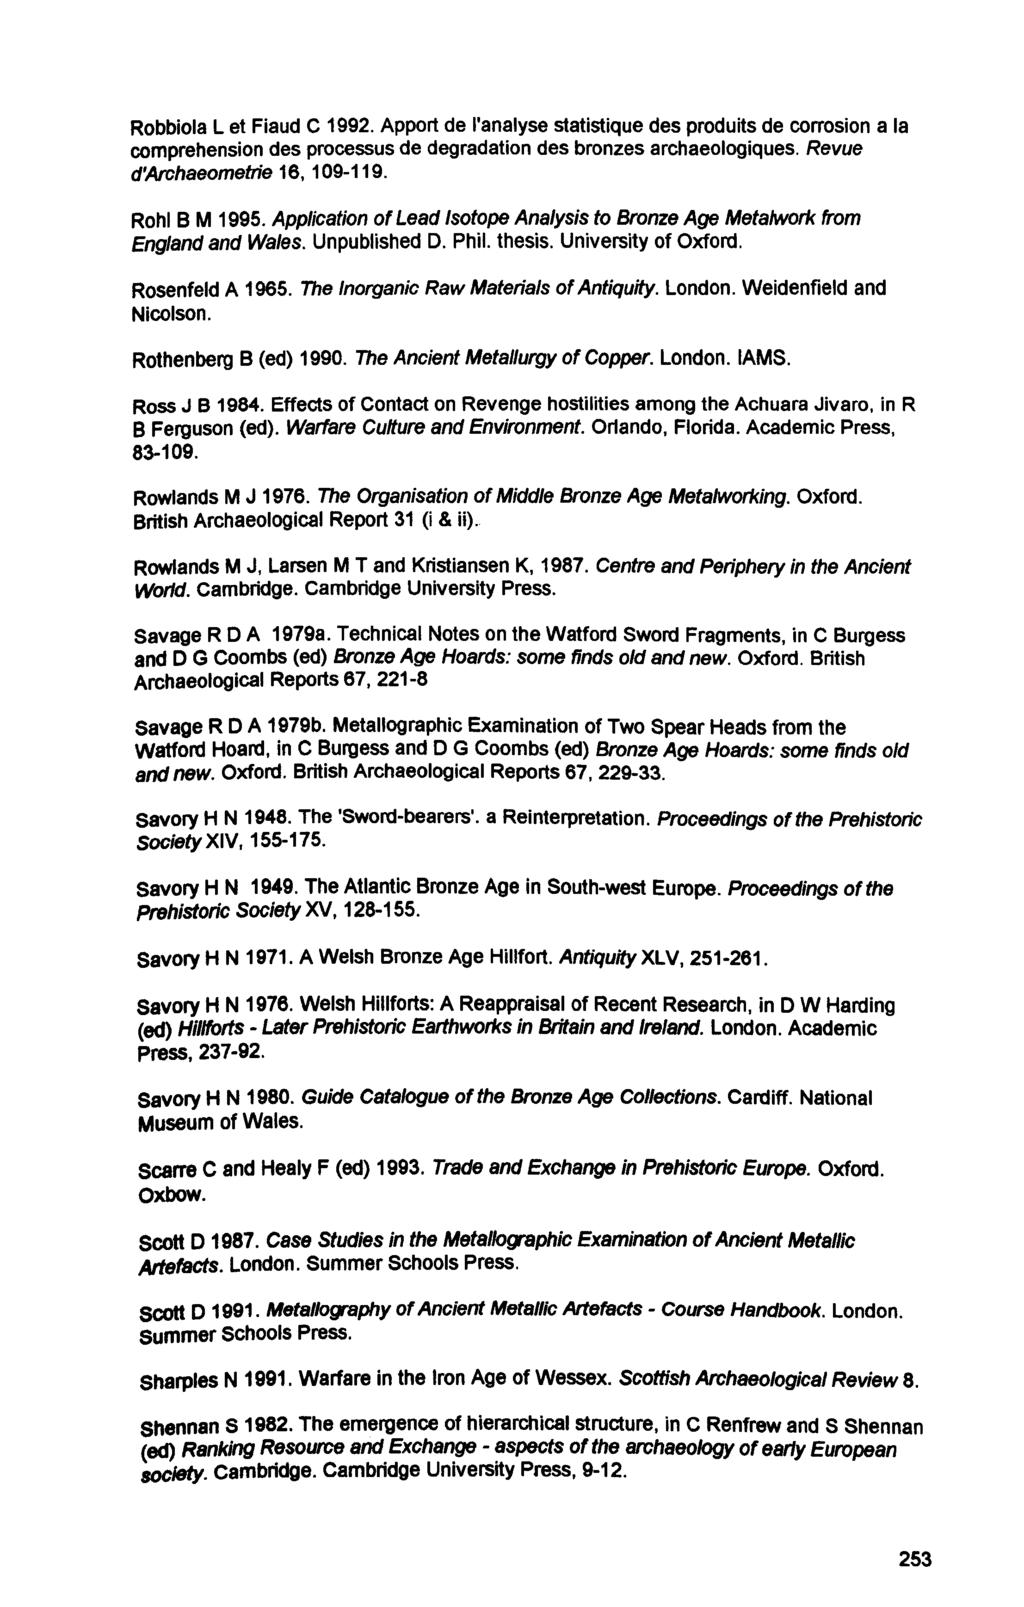 Robbiola L et Fiaud C 1992. Apport de I'analyse statistique des produits de corrosion a la comprehension des processus de degradation des bronzes archaeologiques. Revue d'archaeometrie 16, 109-119.